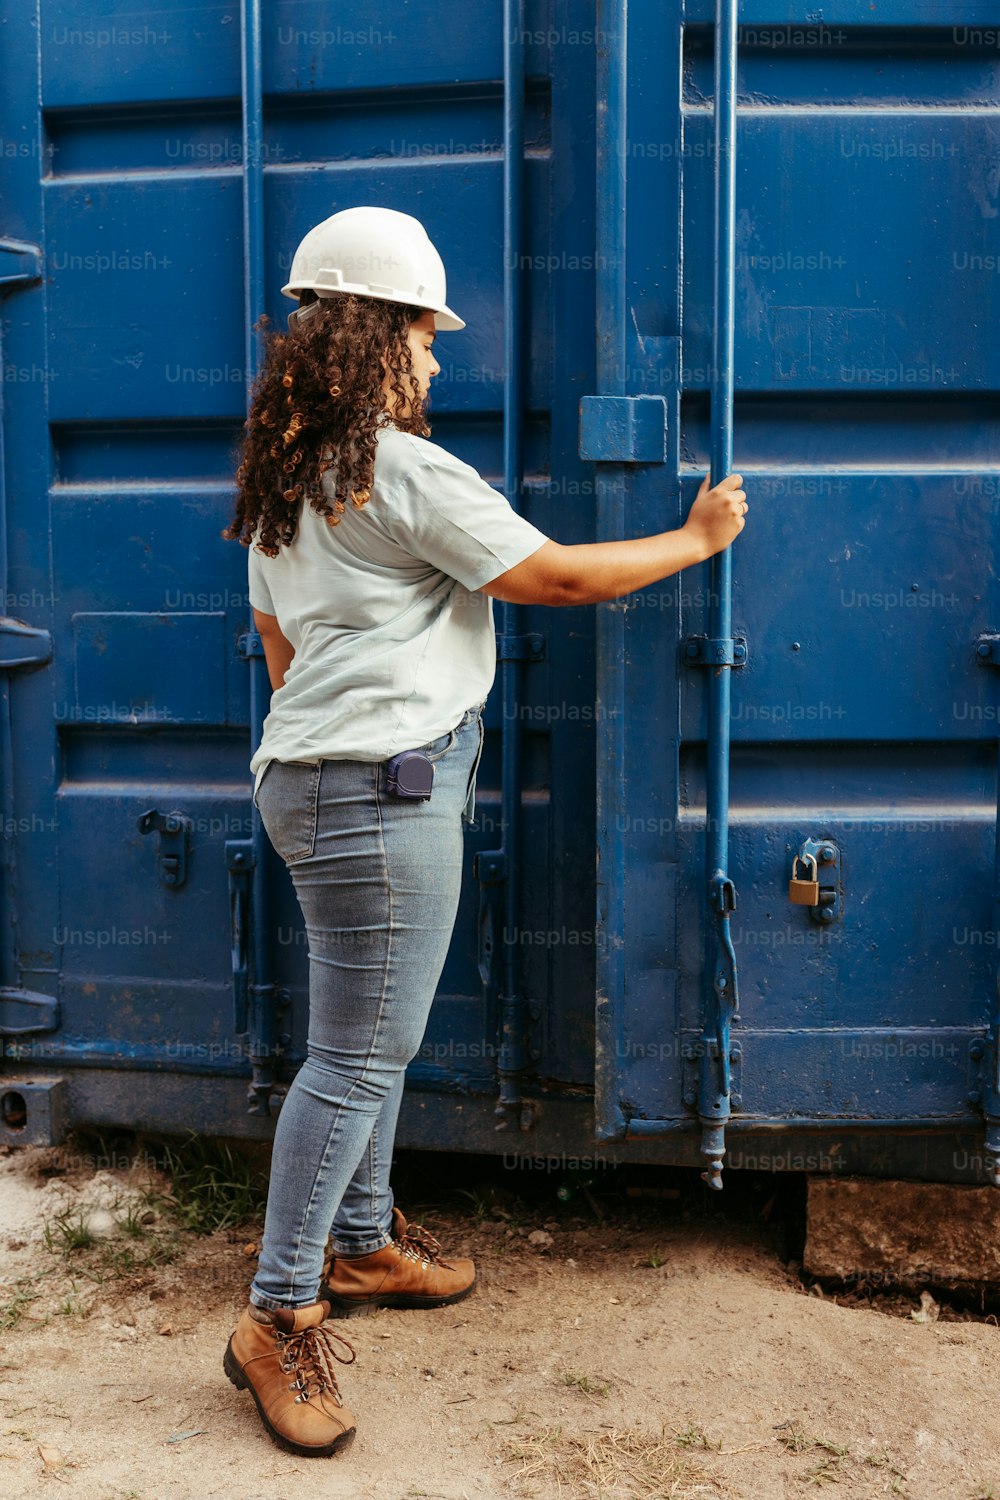 eine Frau, die vor einem blauen Container steht